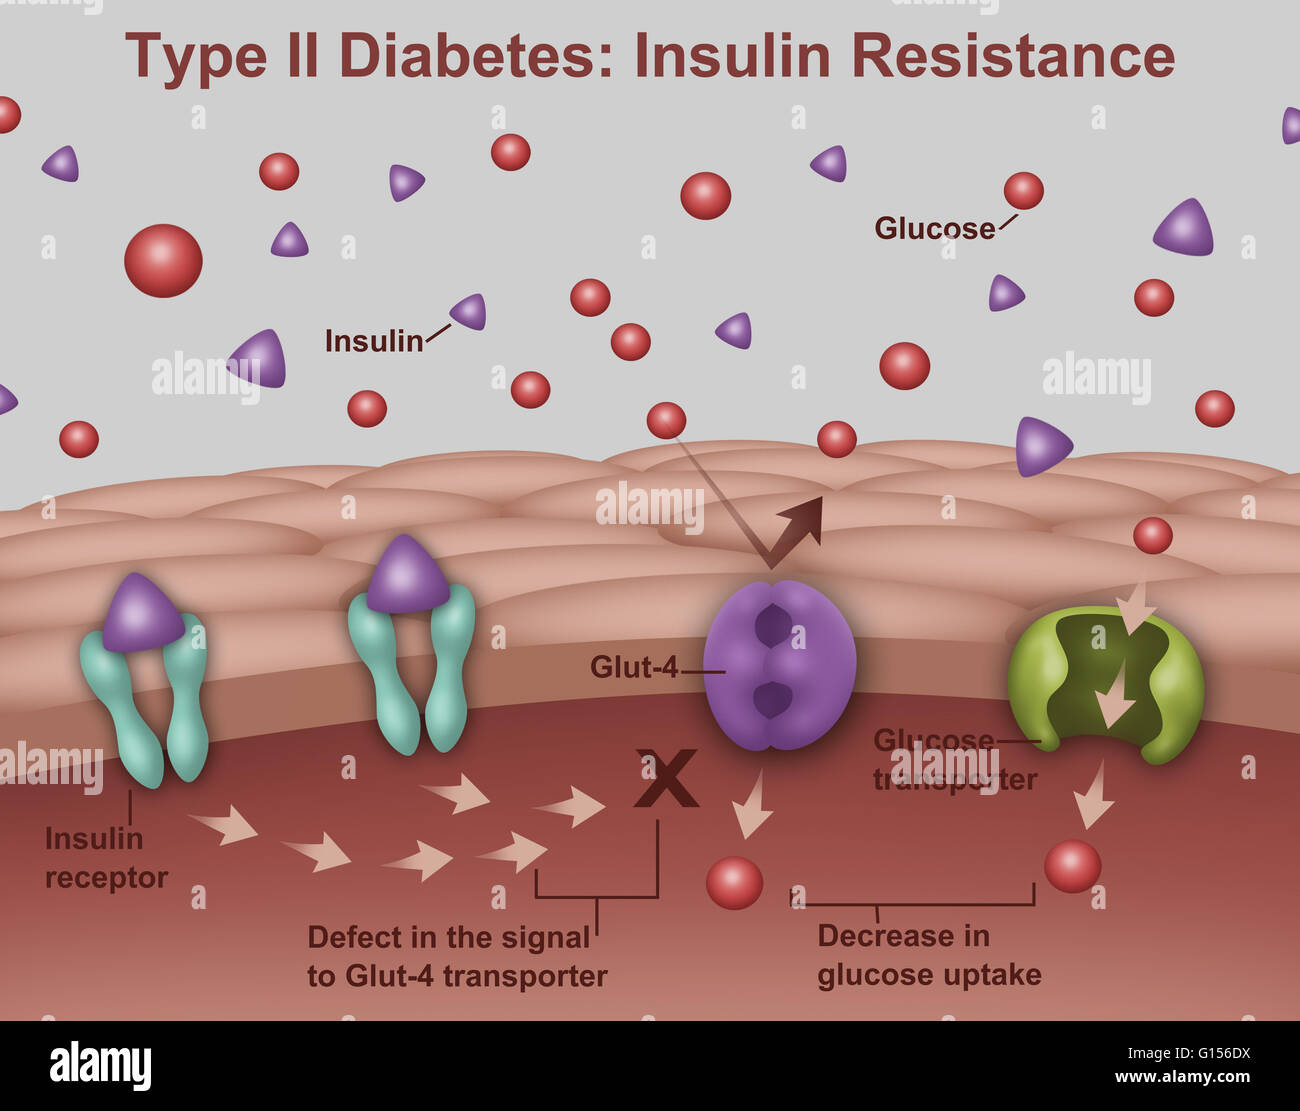 Llustration von Insulin und Glukose-Produktion bei Typ2 Diabetes. Insulin  (lila Dreiecke) wird von Inselzellen in der Bauchspeicheldrüse produziert  und handelt im Einklang mit Glukose (rote Punkte), Energie in den Zellen  des Körpers